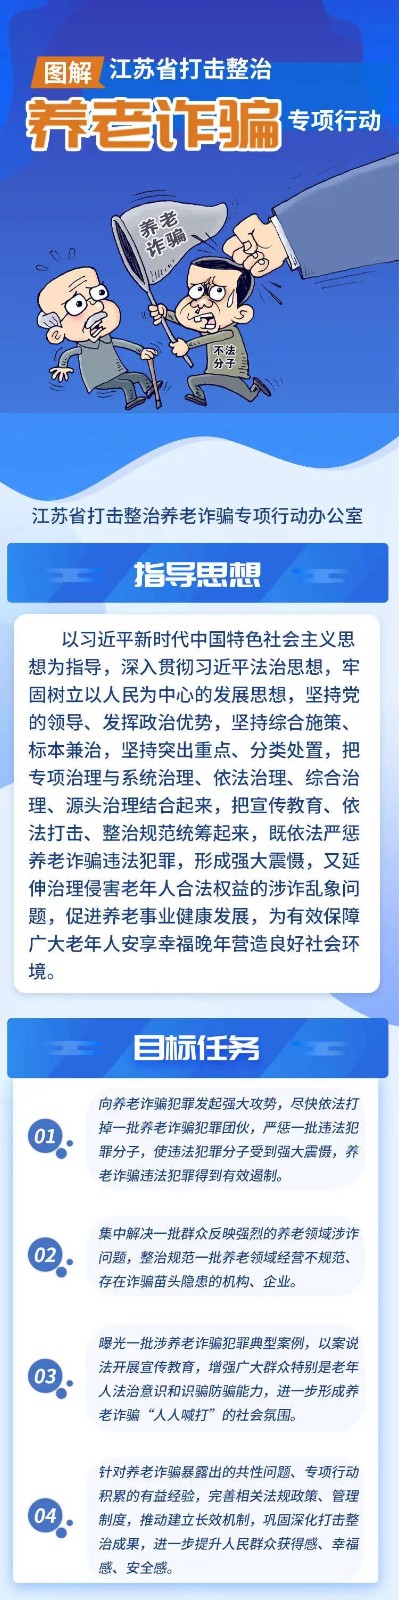 图解丨江苏省打击整治养老诈骗专项行动